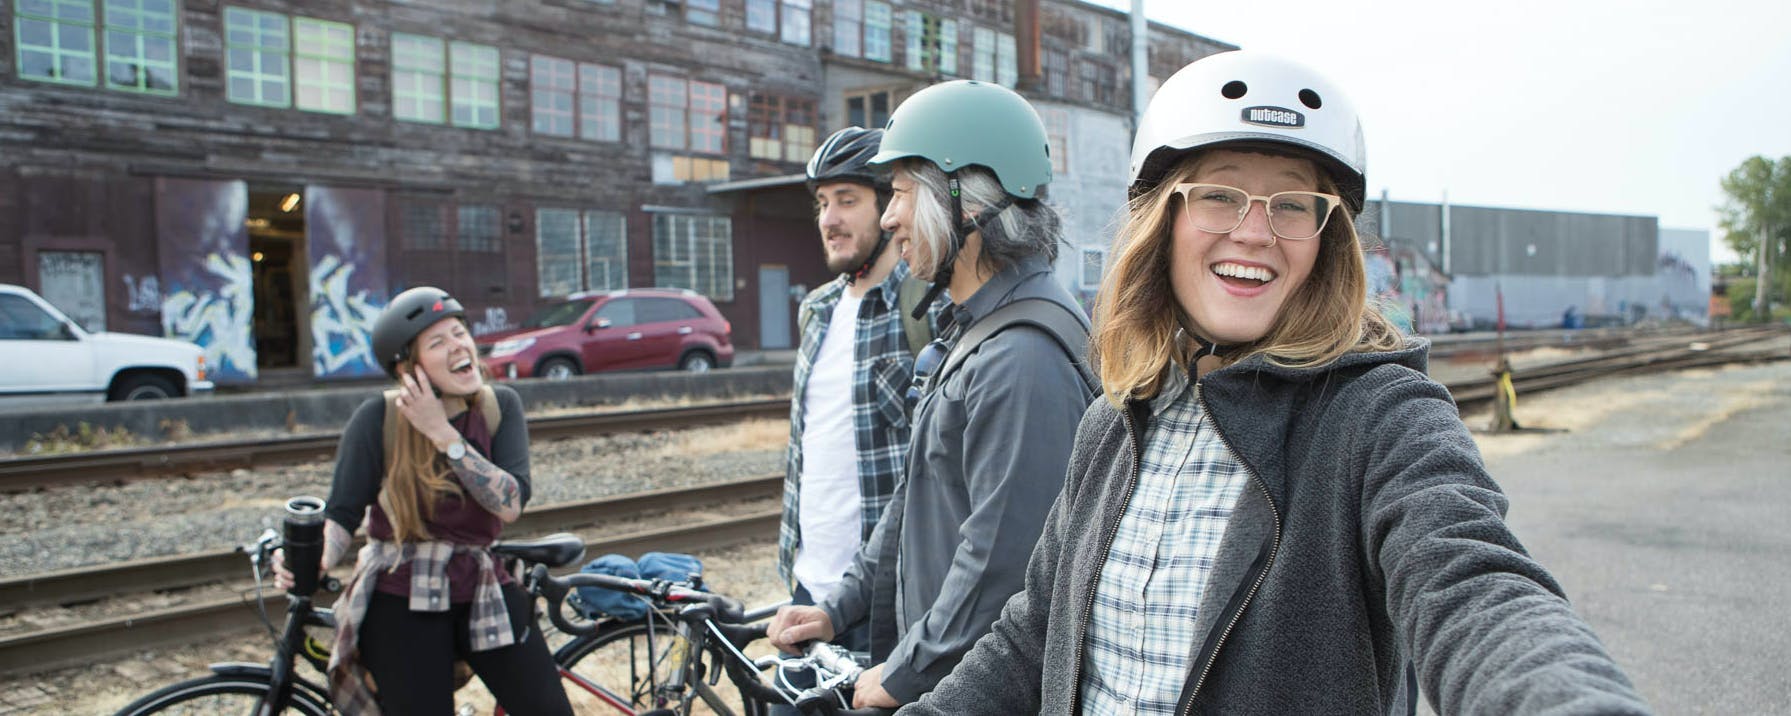 Culture cycliste : villes canadiennes idéales pour le vélo urbain